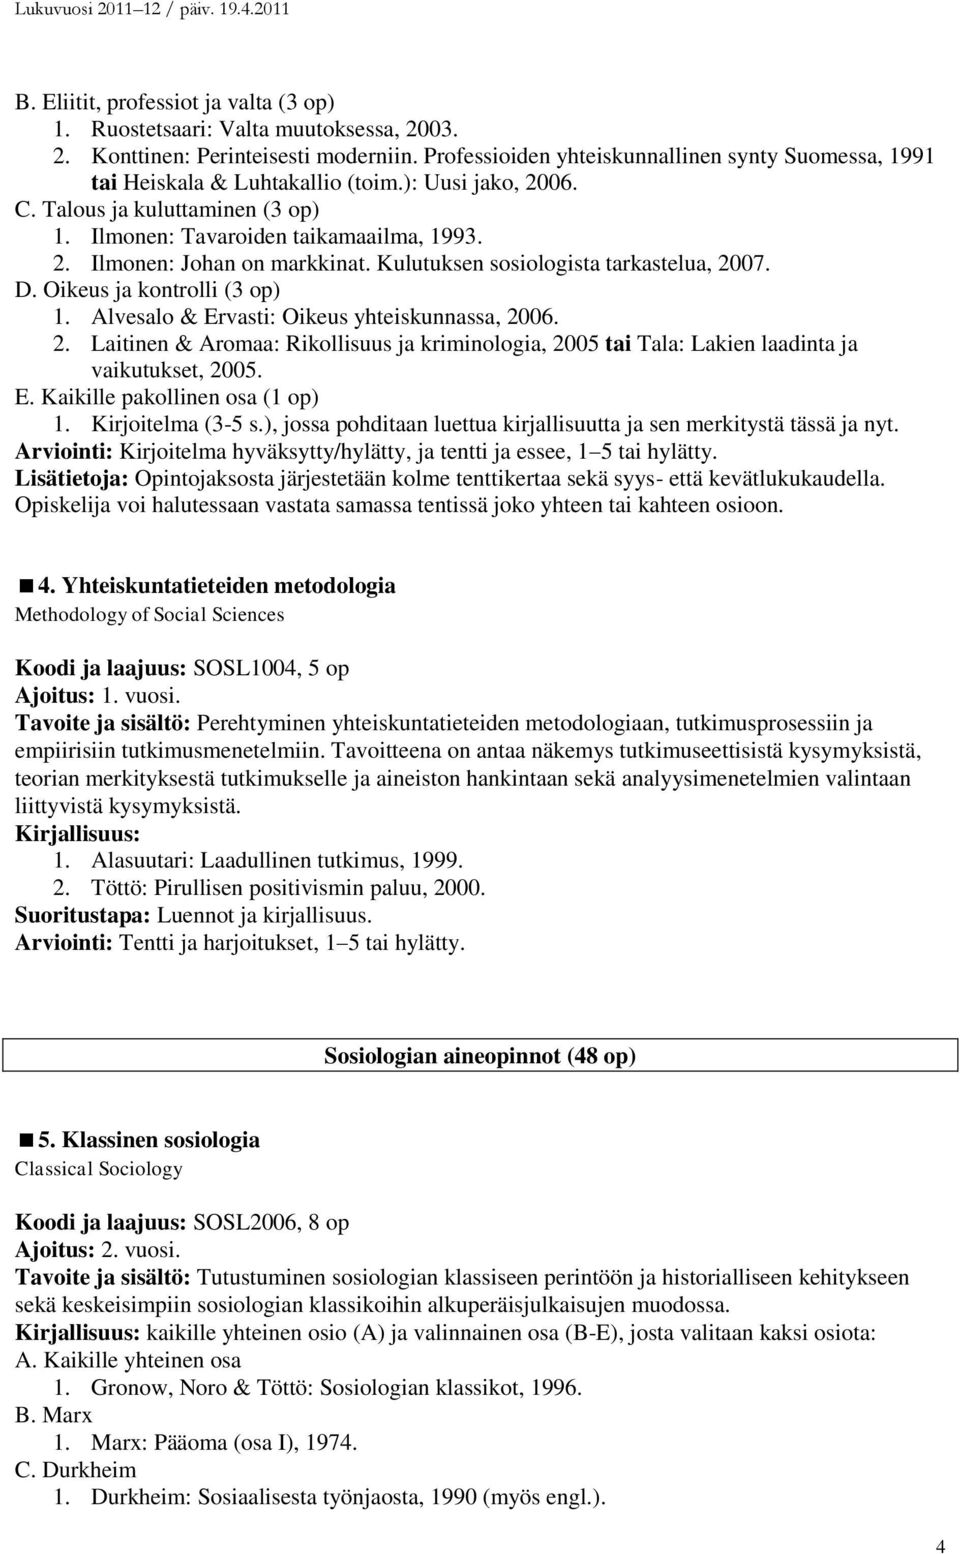 Kulutuksen sosiologista tarkastelua, 2007. D. Oikeus ja kontrolli (3 op) 1. Alvesalo & Ervasti: Oikeus yhteiskunnassa, 2006. 2. Laitinen & Aromaa: Rikollisuus ja kriminologia, 2005 tai Tala: Lakien laadinta ja vaikutukset, 2005.